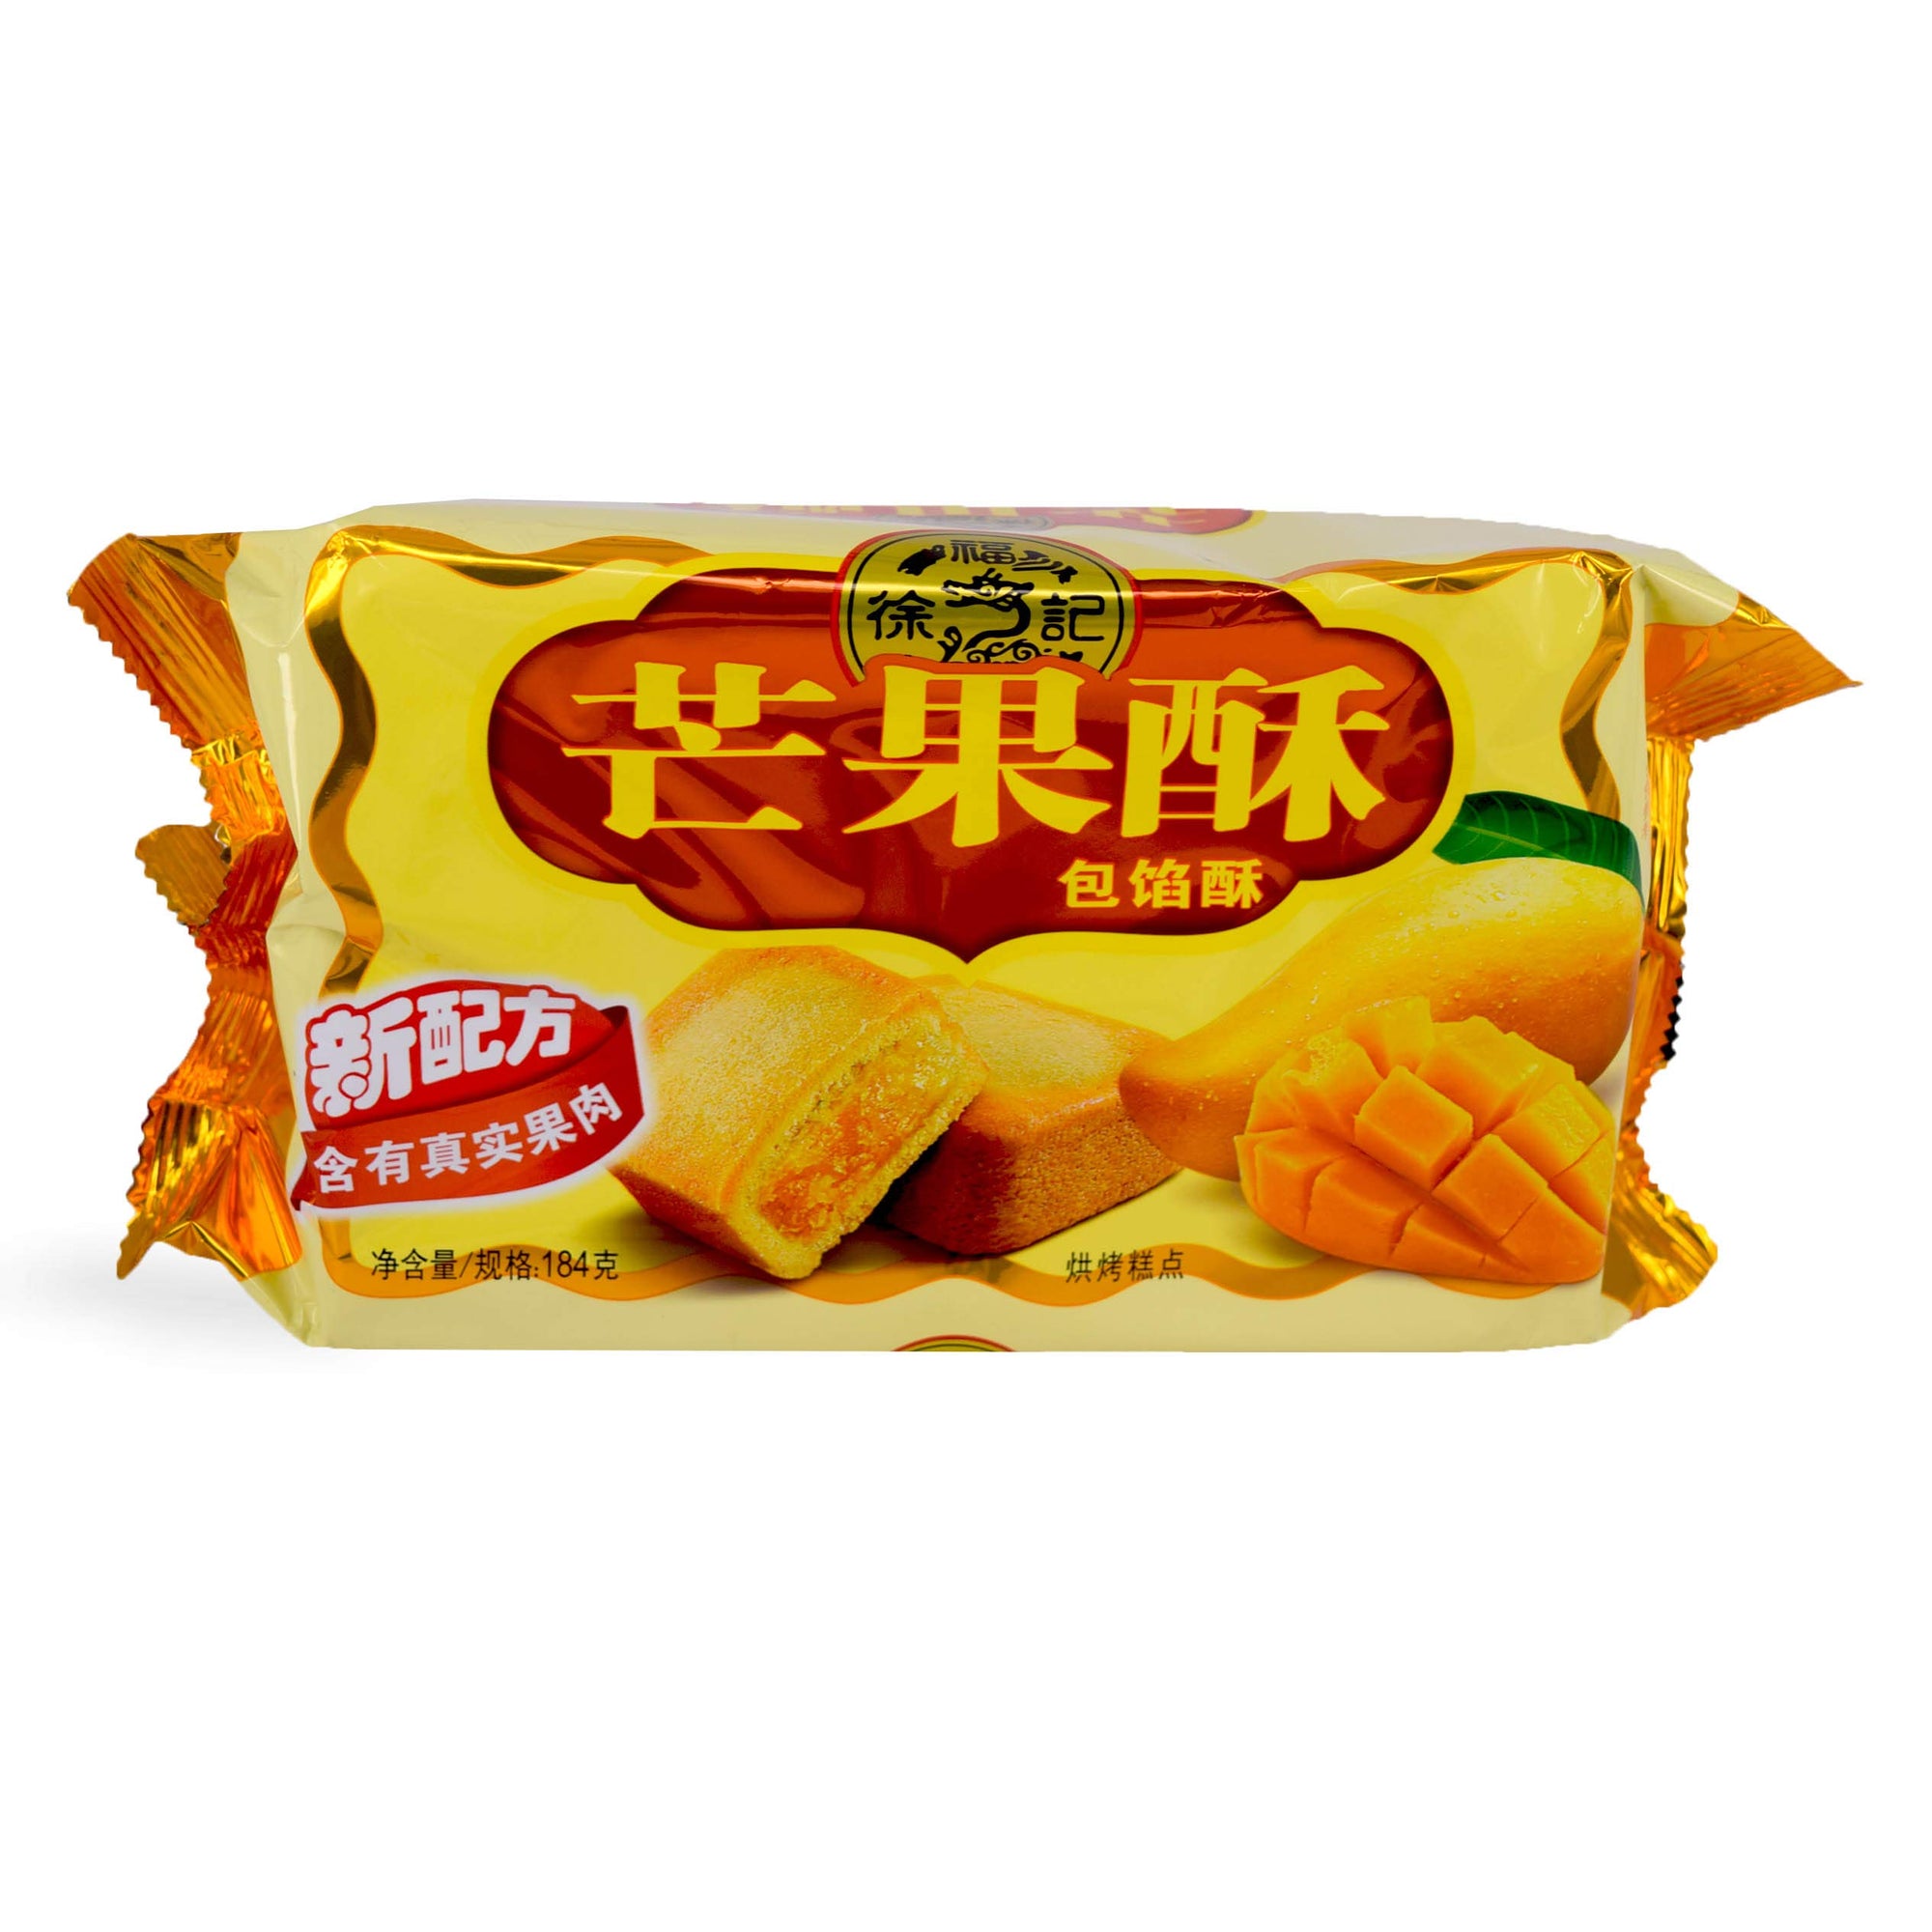 XuFuJi Cookie 徐福记芒果酥Mango Sandwich Cookie 182g (pack of 2)